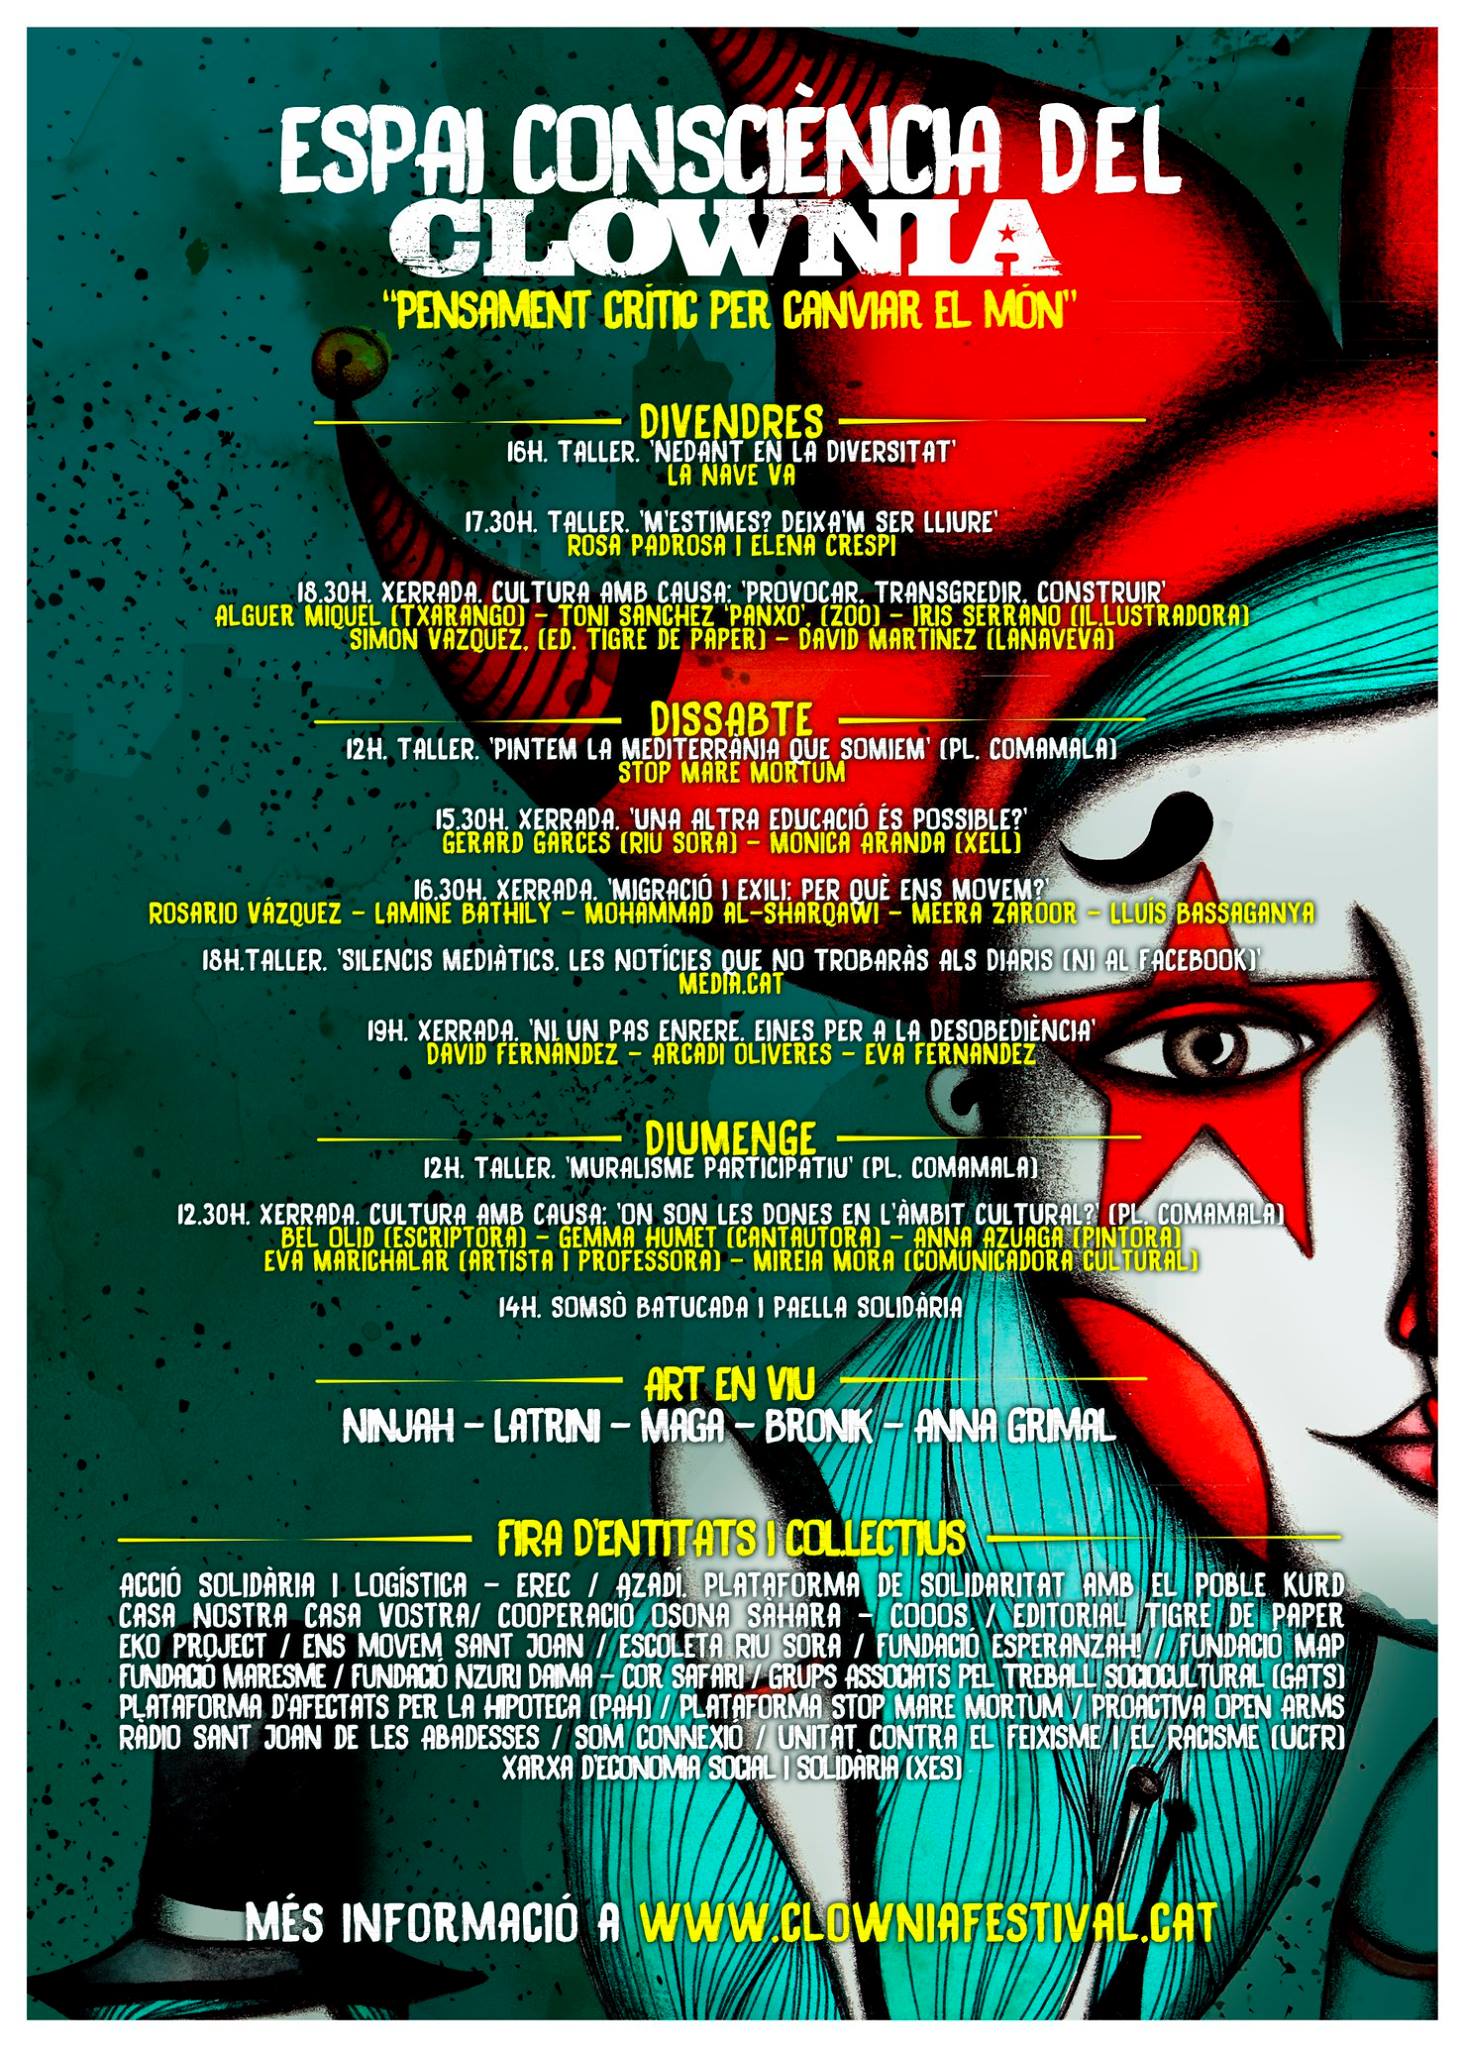 Clownia Festival - Espai Consciència